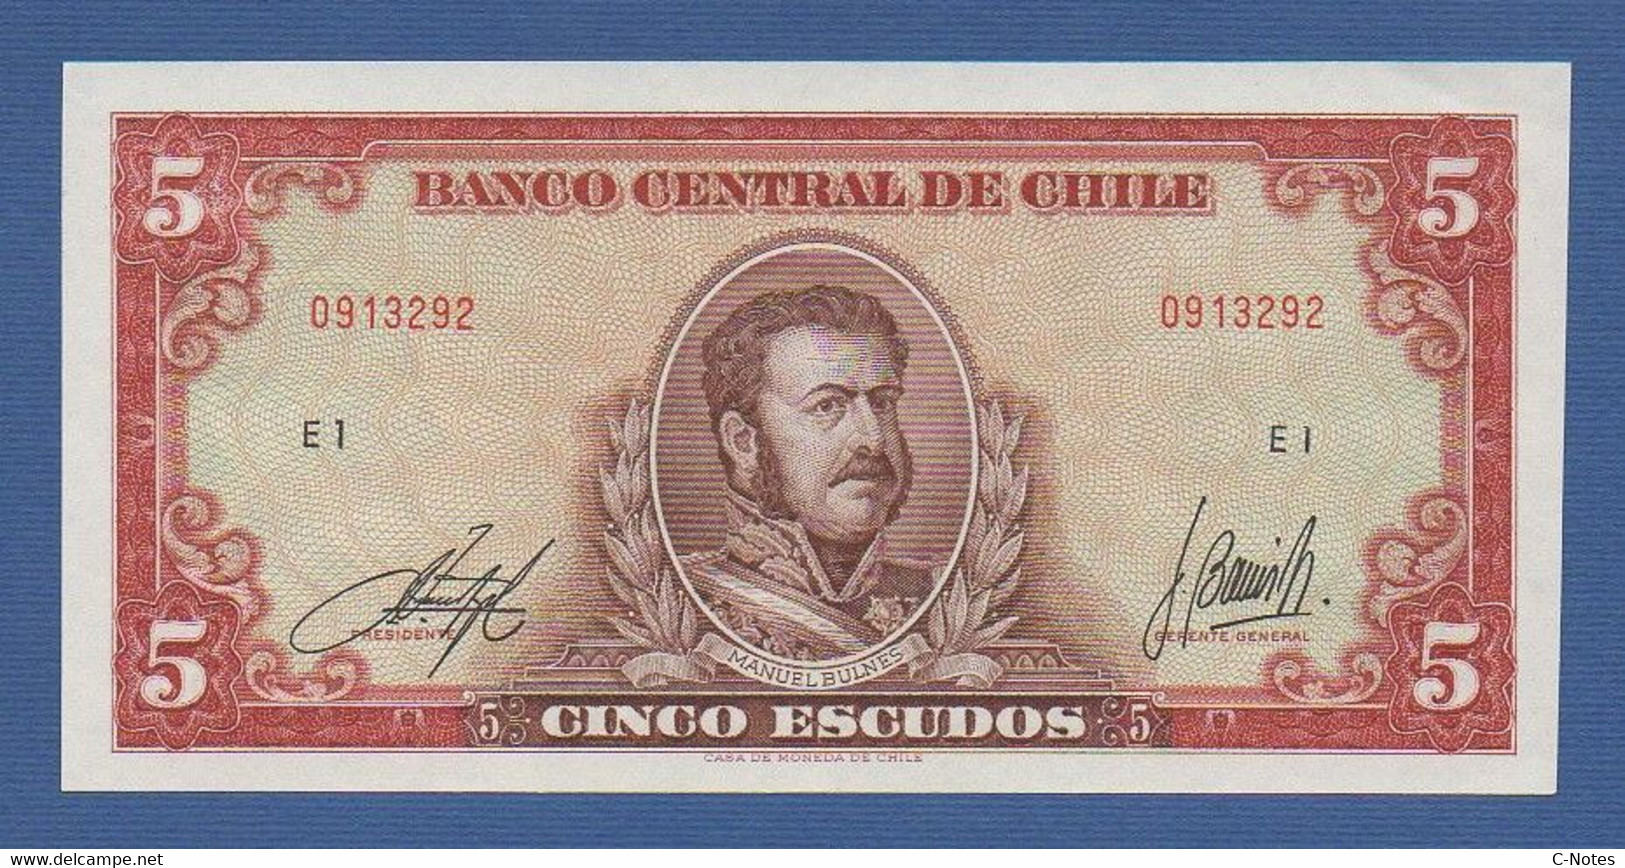 CHILE - P.138 (6) – 5 Escudos ND 1964 UNC, Serie E1 0913292 - Chile